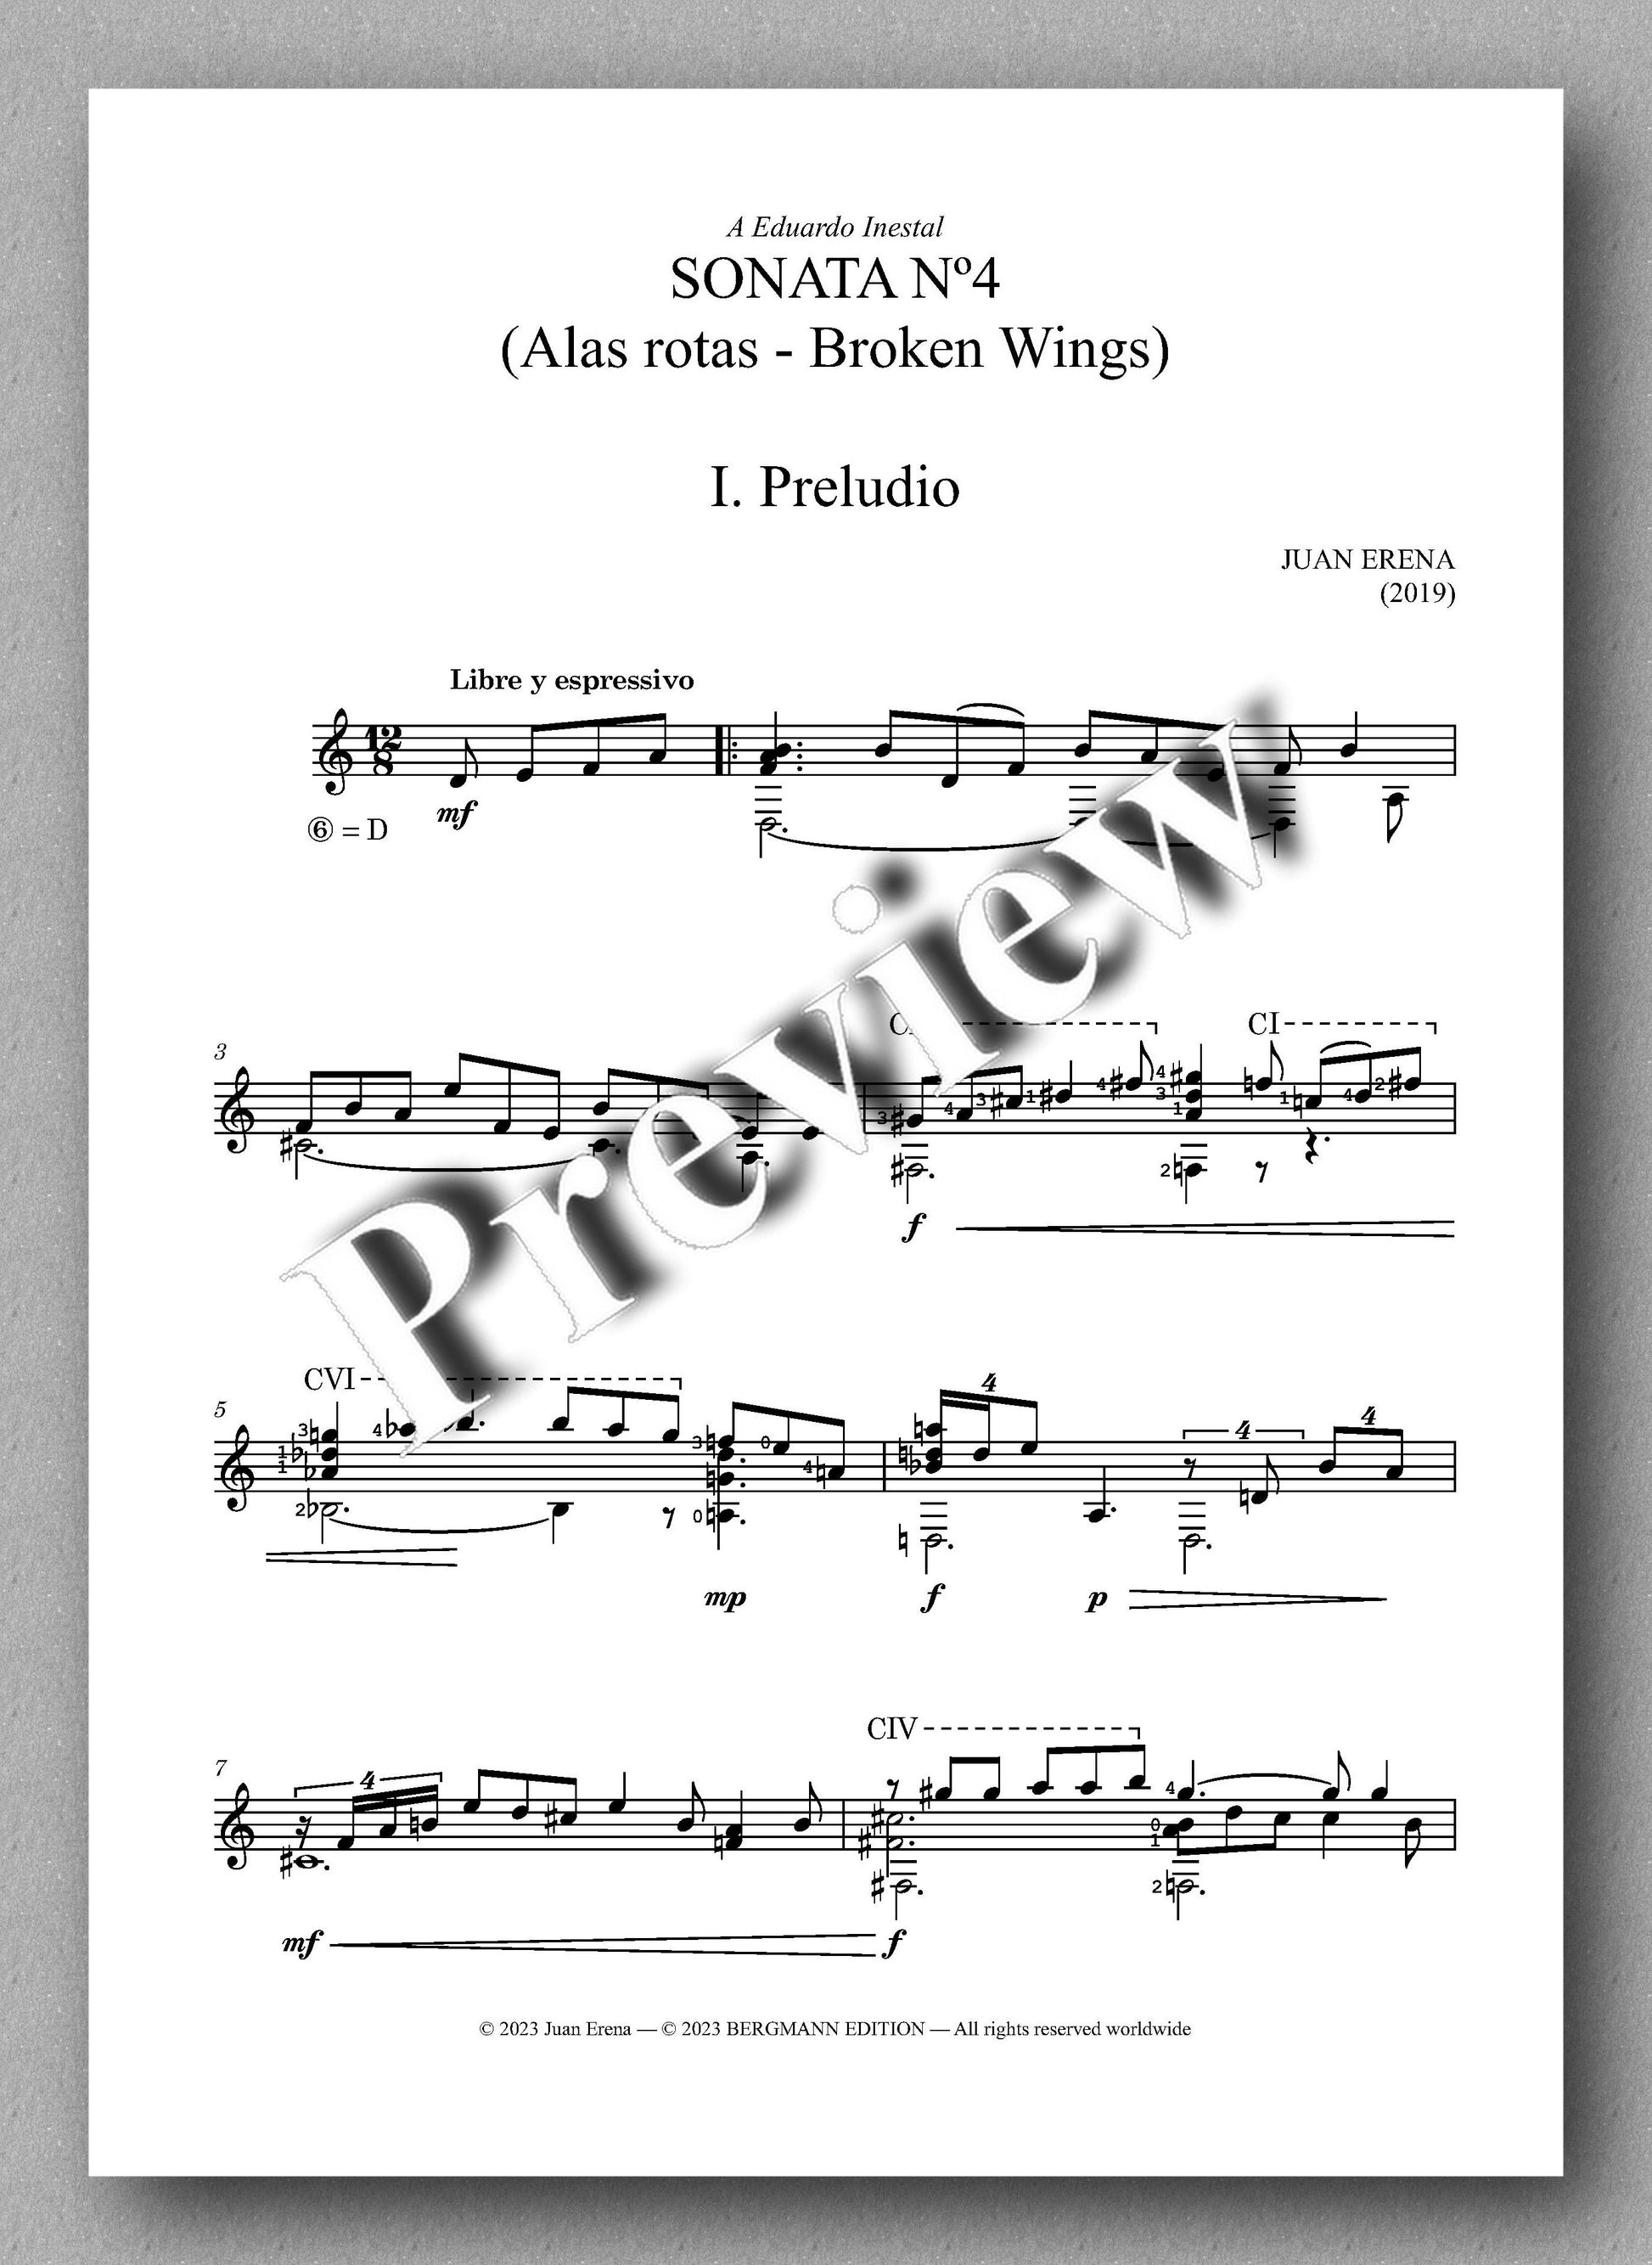 Juan Erena, Sonata IV, (Alas rotas - Broken Wings) - preview of the music score 1